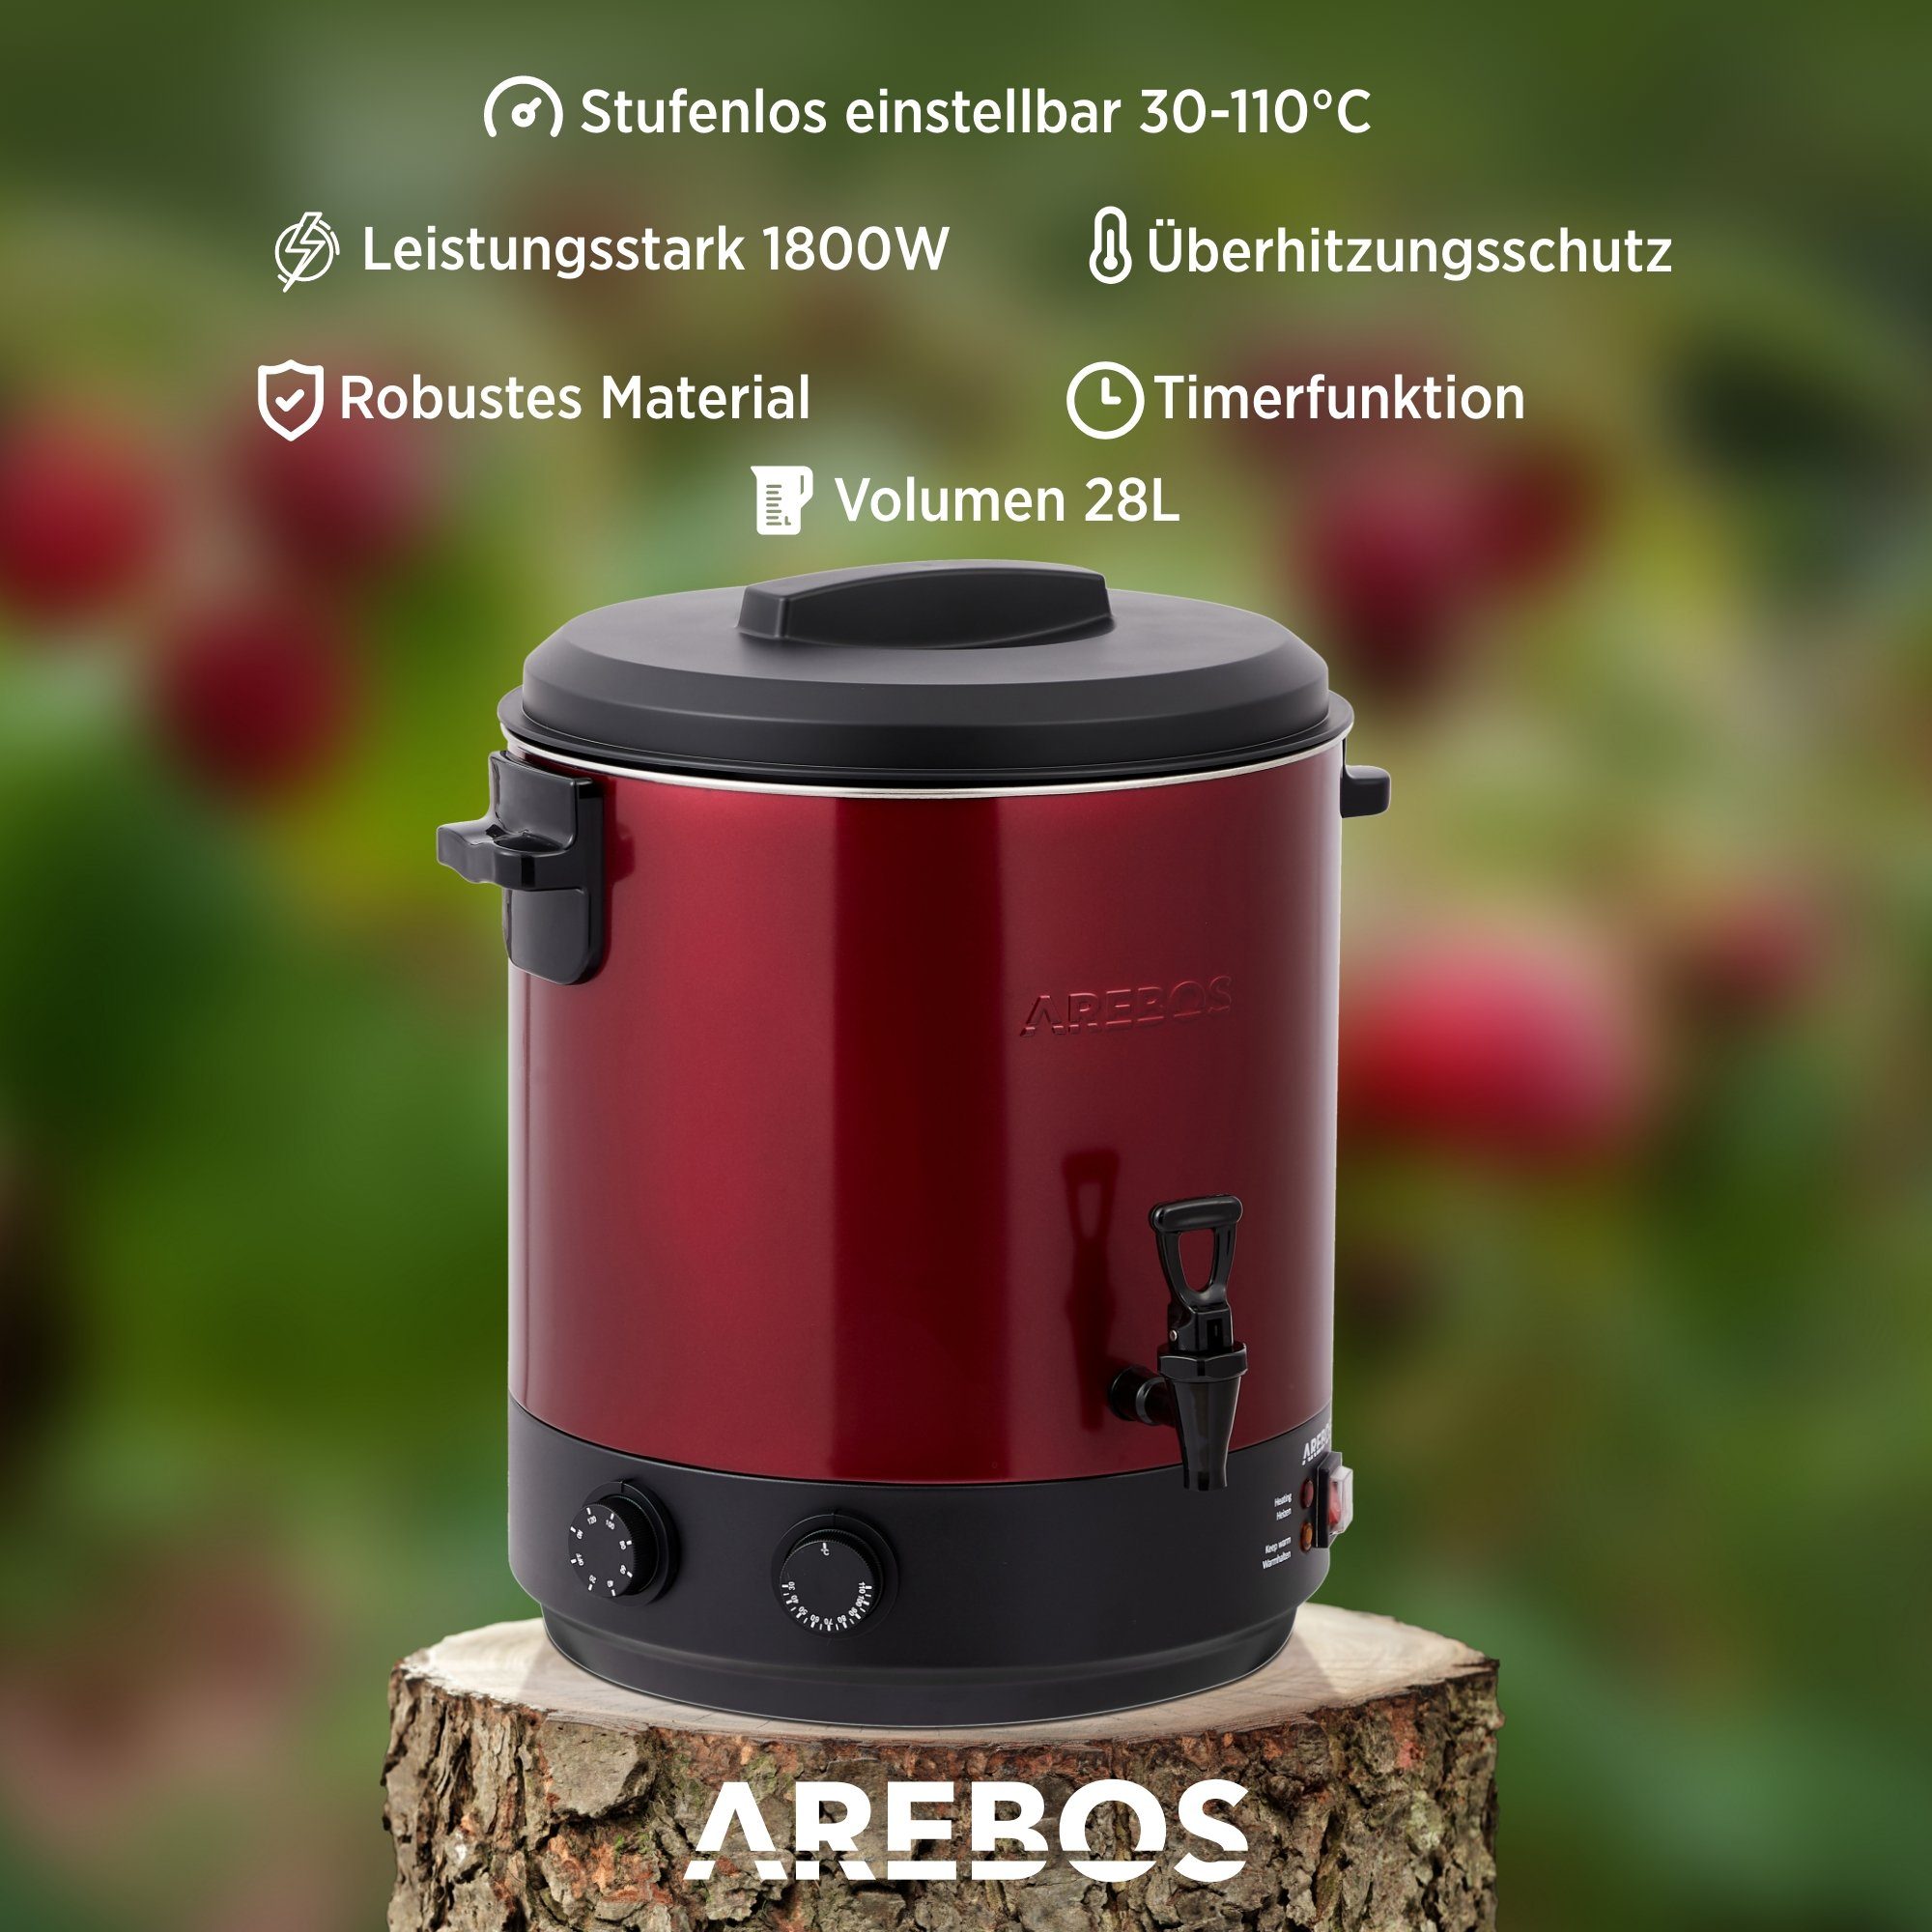 Timer,Thermostat W, & Glühweinautomat Einkoch- Arebos 1800 Einkochtopf Timerfunktion rot Überhitzungsschutz, 28 L, mit und